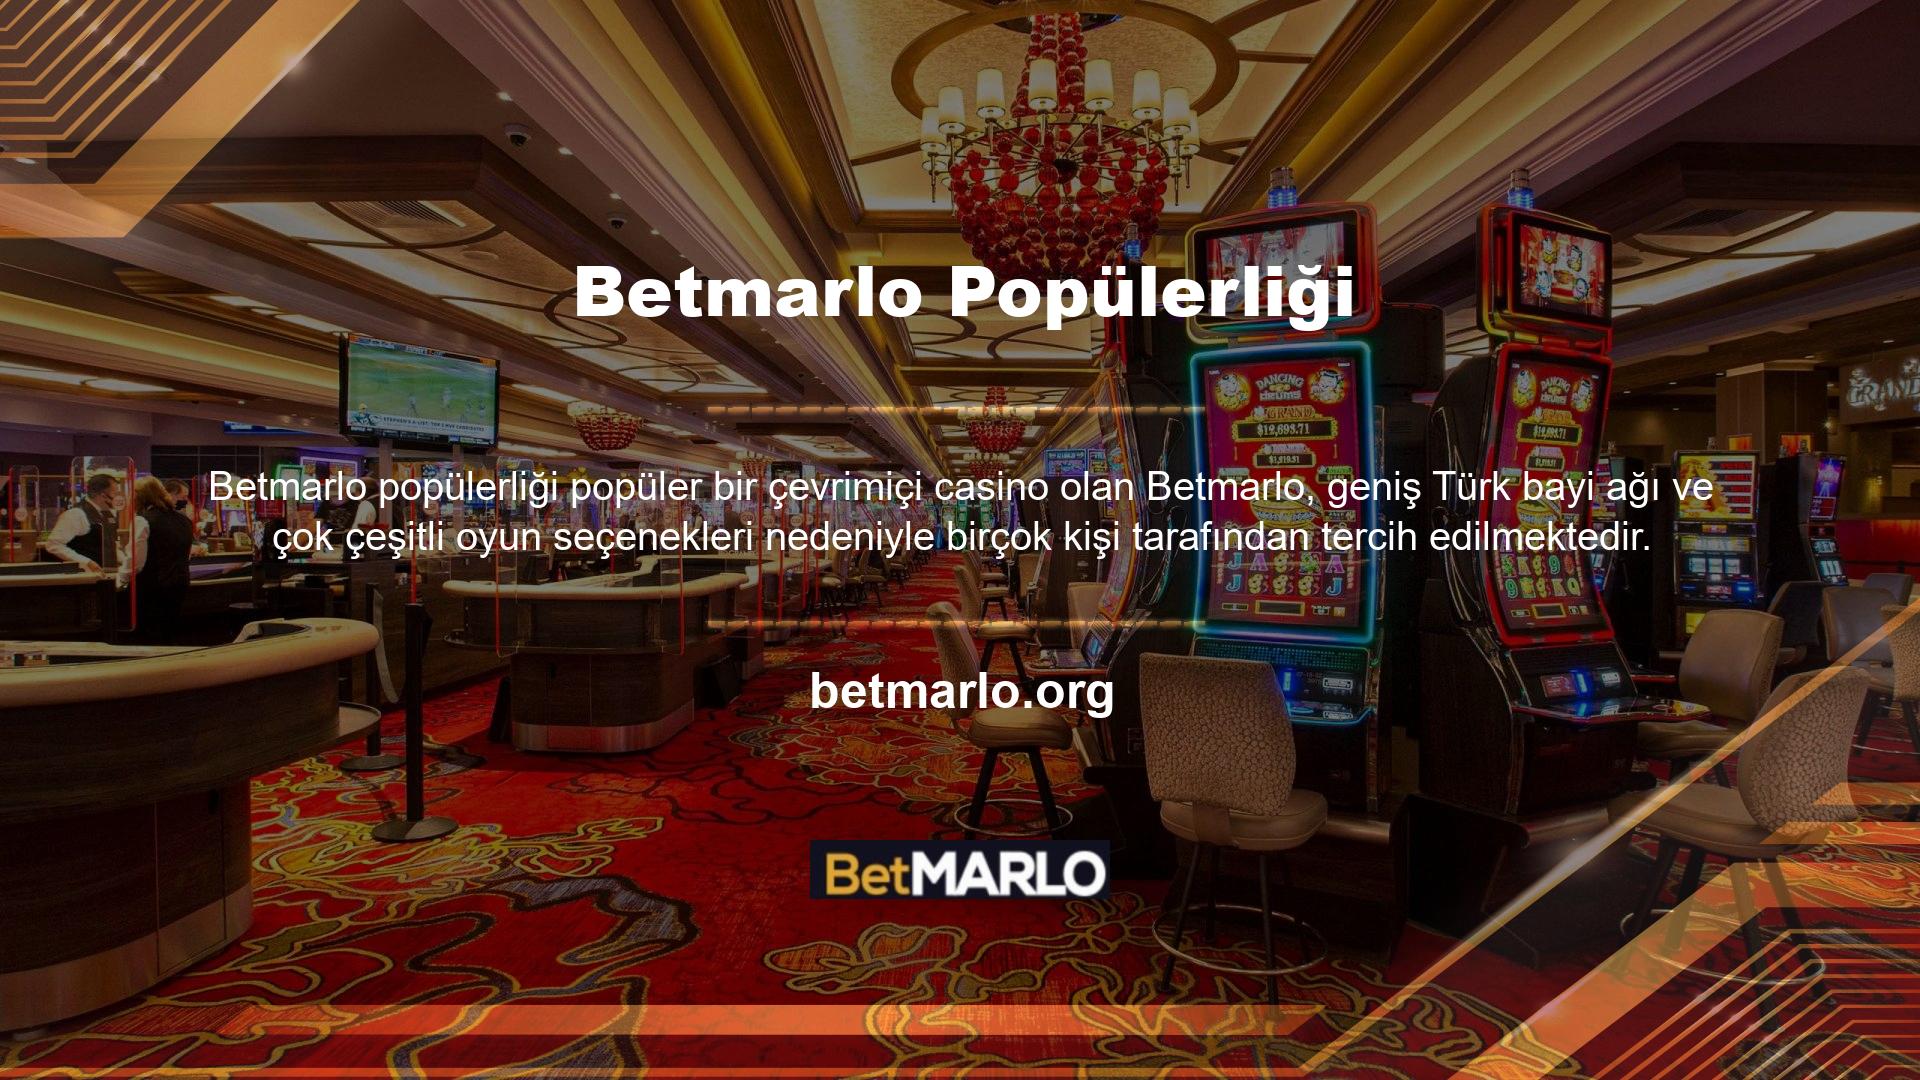 Sitede yer alan casino, müşterilere eğlence sağlamak ve para kazanmak amacıyla gece gündüz açıktır